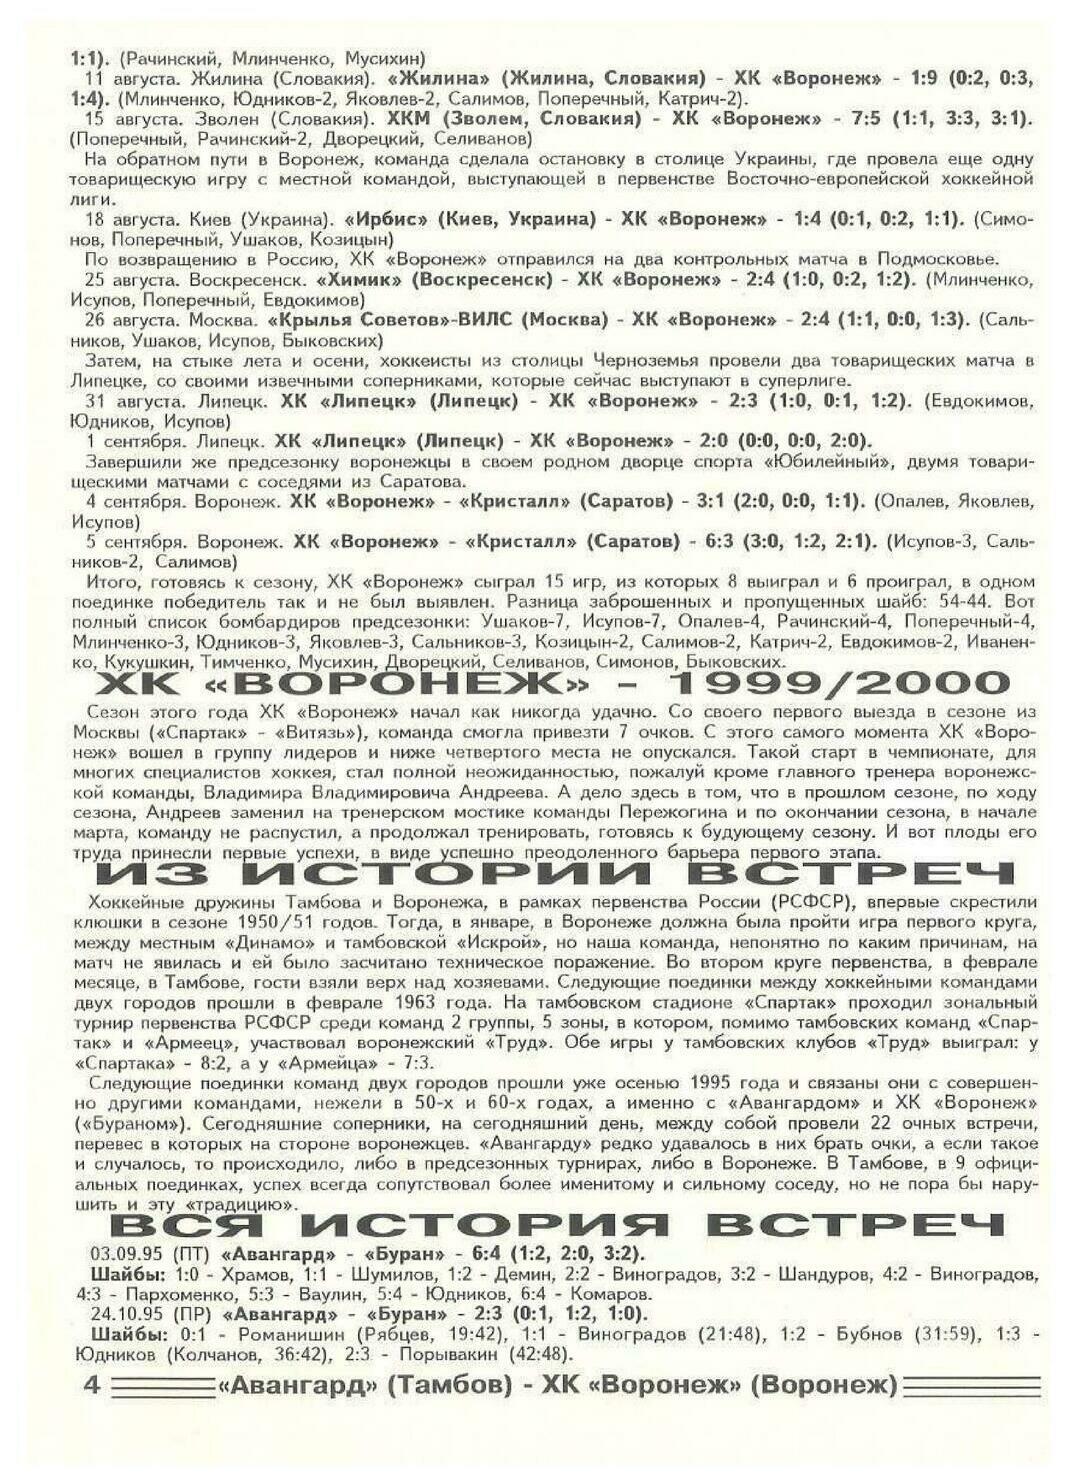 Программа "Авангард" Тамбов - ХК "Воронеж" №54 от 17-18.01.2000г.